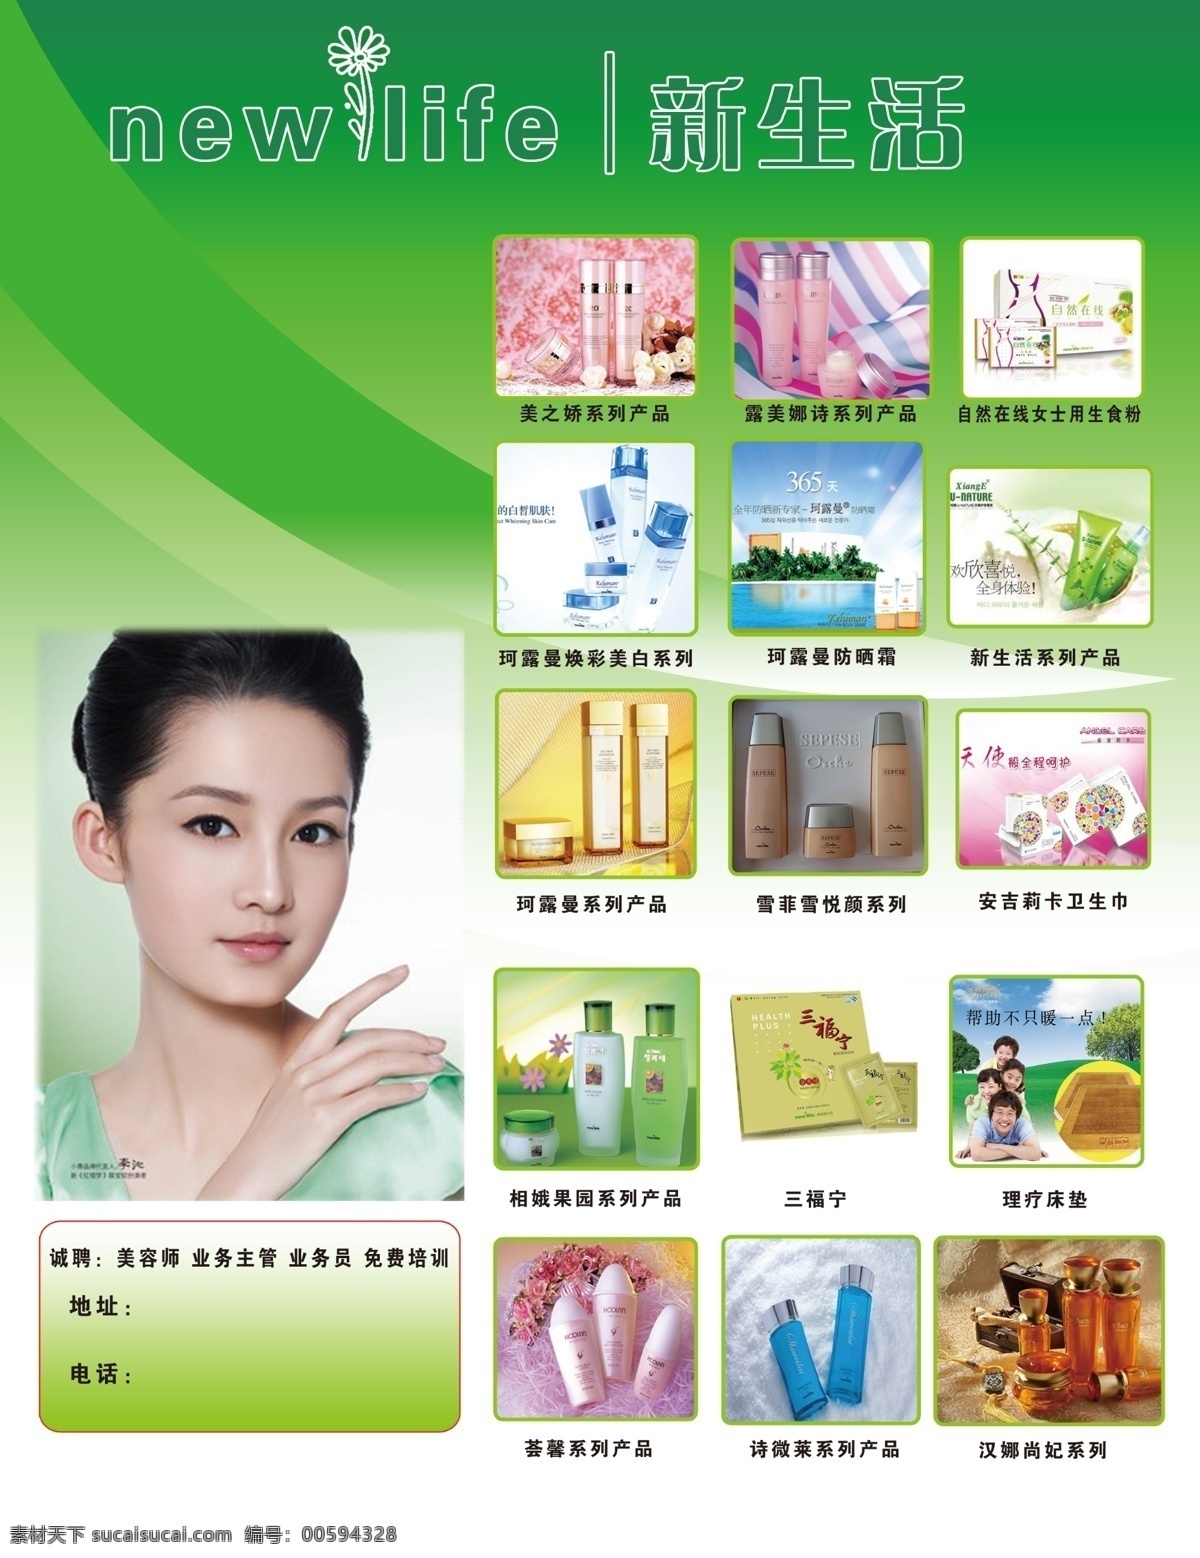 韩国新生活 新生活 美女 彩页 dm宣传单 化妆品 卫生巾 广告设计模板 源文件